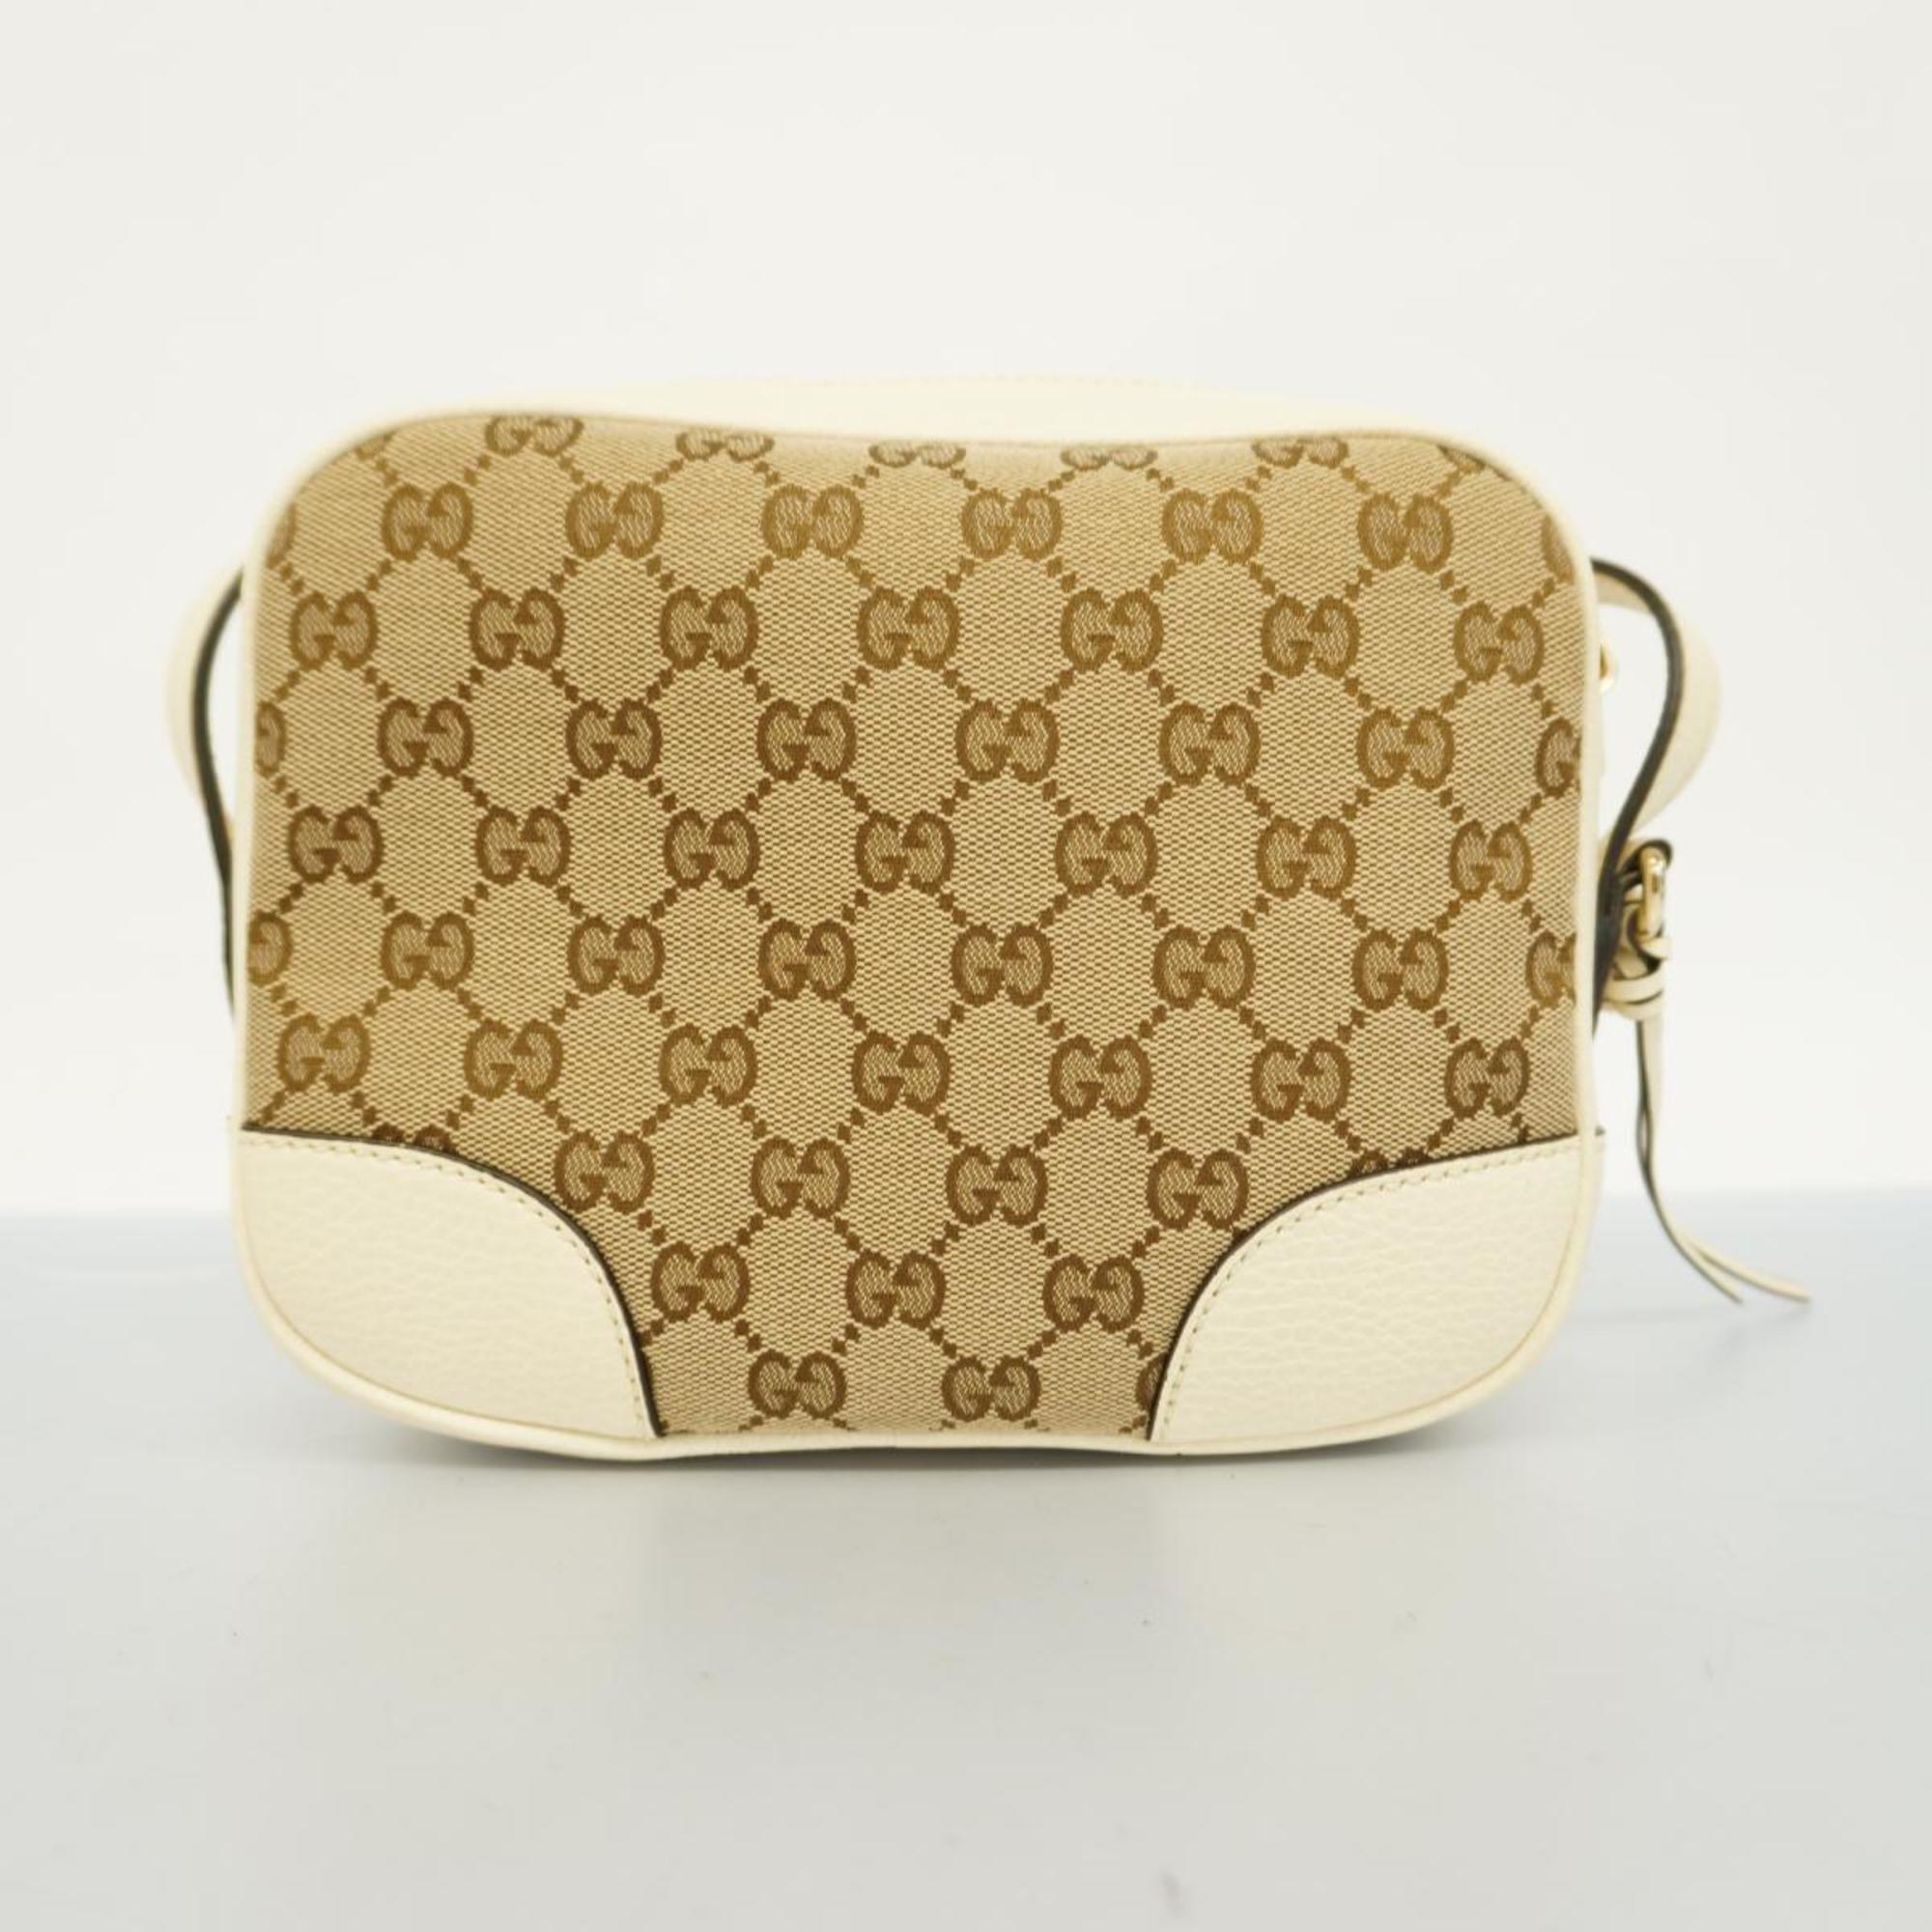 Gucci Shoulder Bag GG Canvas Interlocking G 449413 Beige White Women's